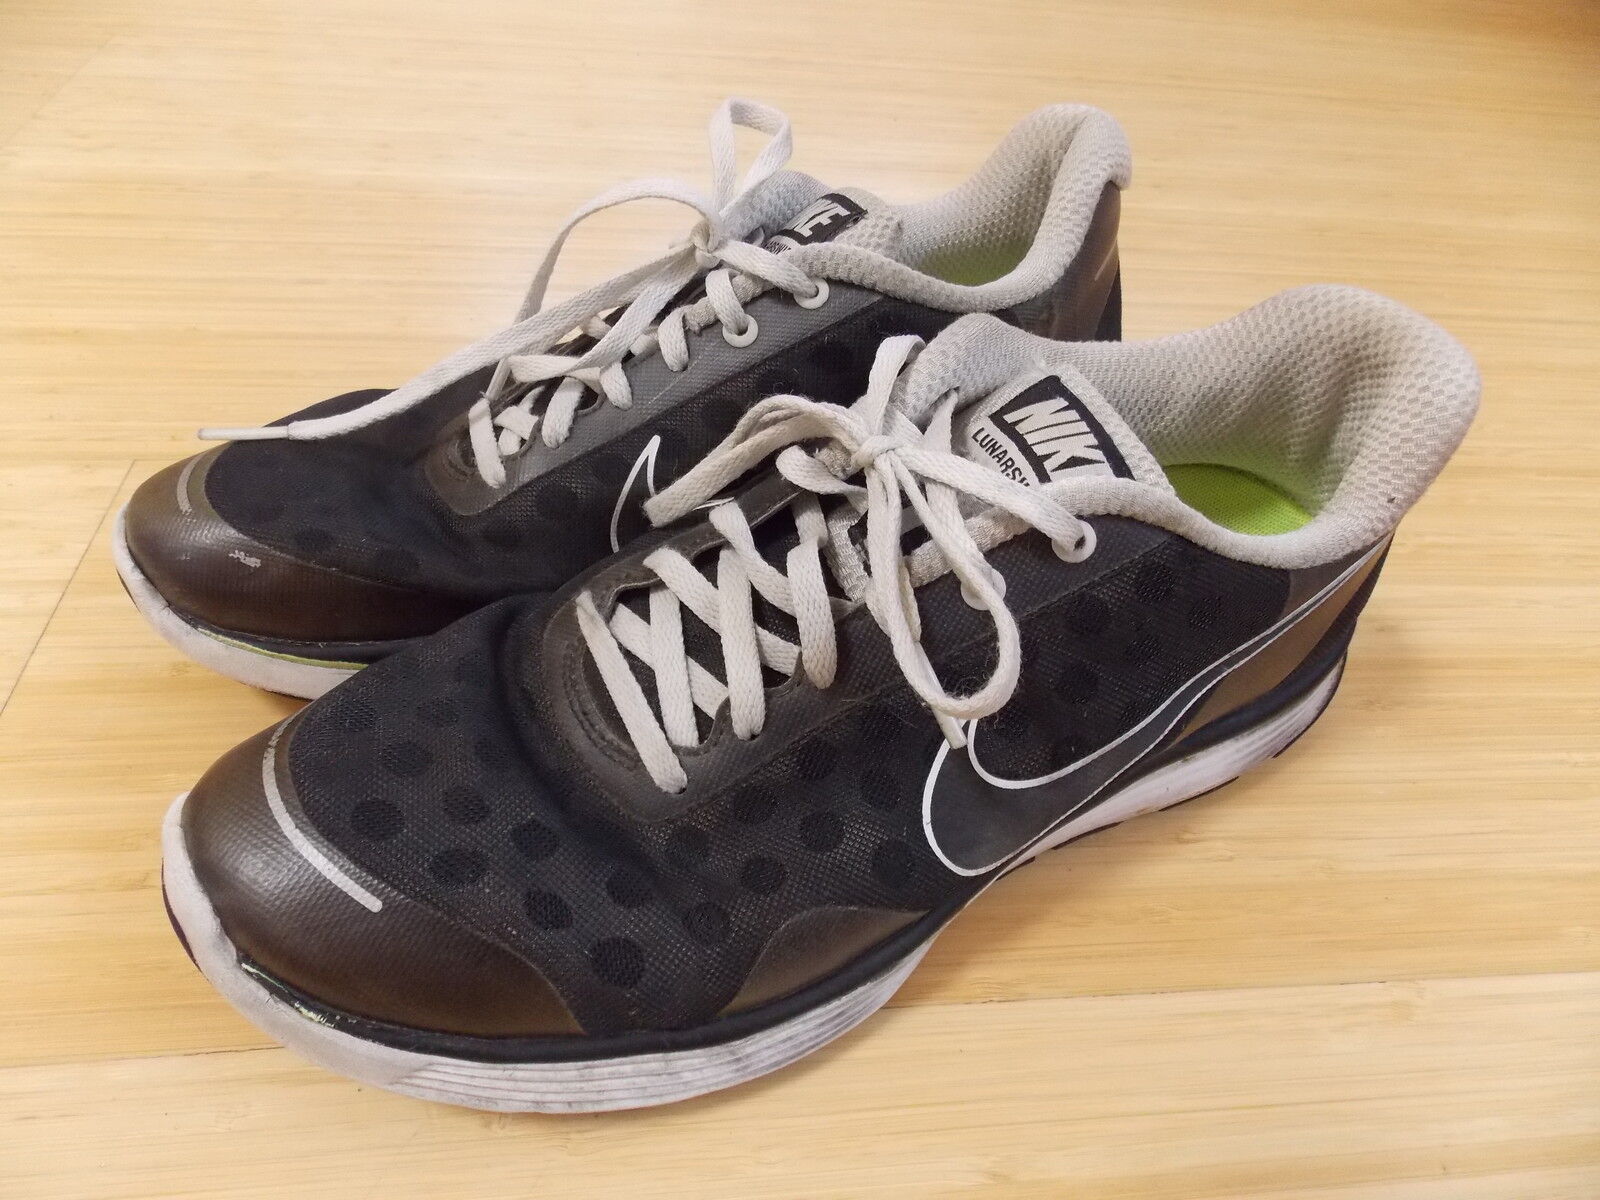 Size 8.5 - Nike LunarSwift 2 Black sale online eBay